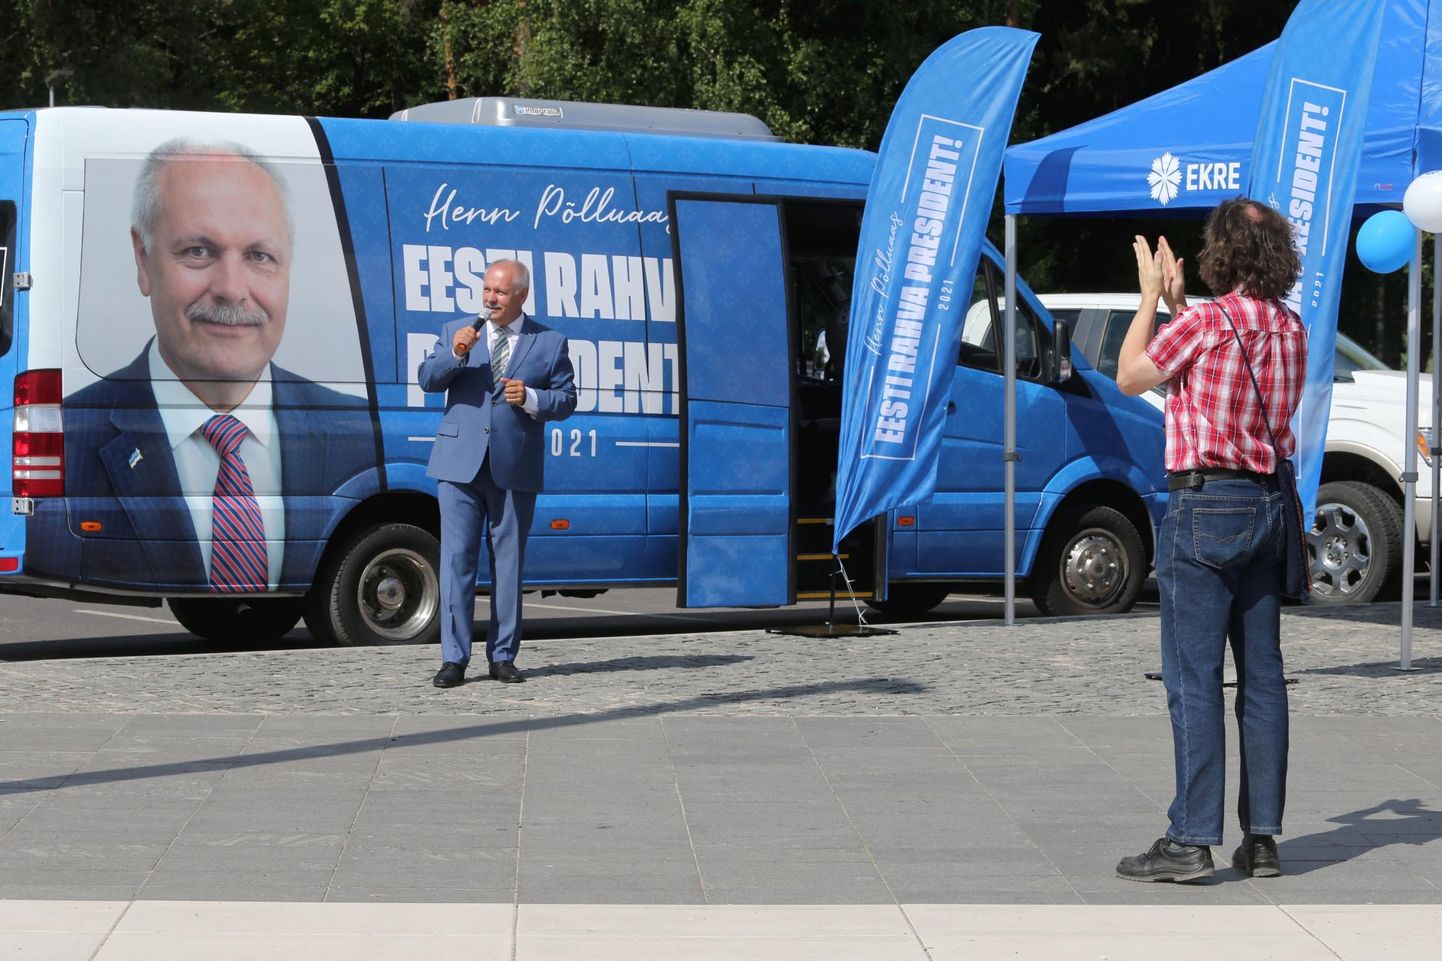 Кандидат от EKRE на пост президента Хенн Пыллуаас отправился в турне по Эстонии в поддержку своей предвыборной кампании.